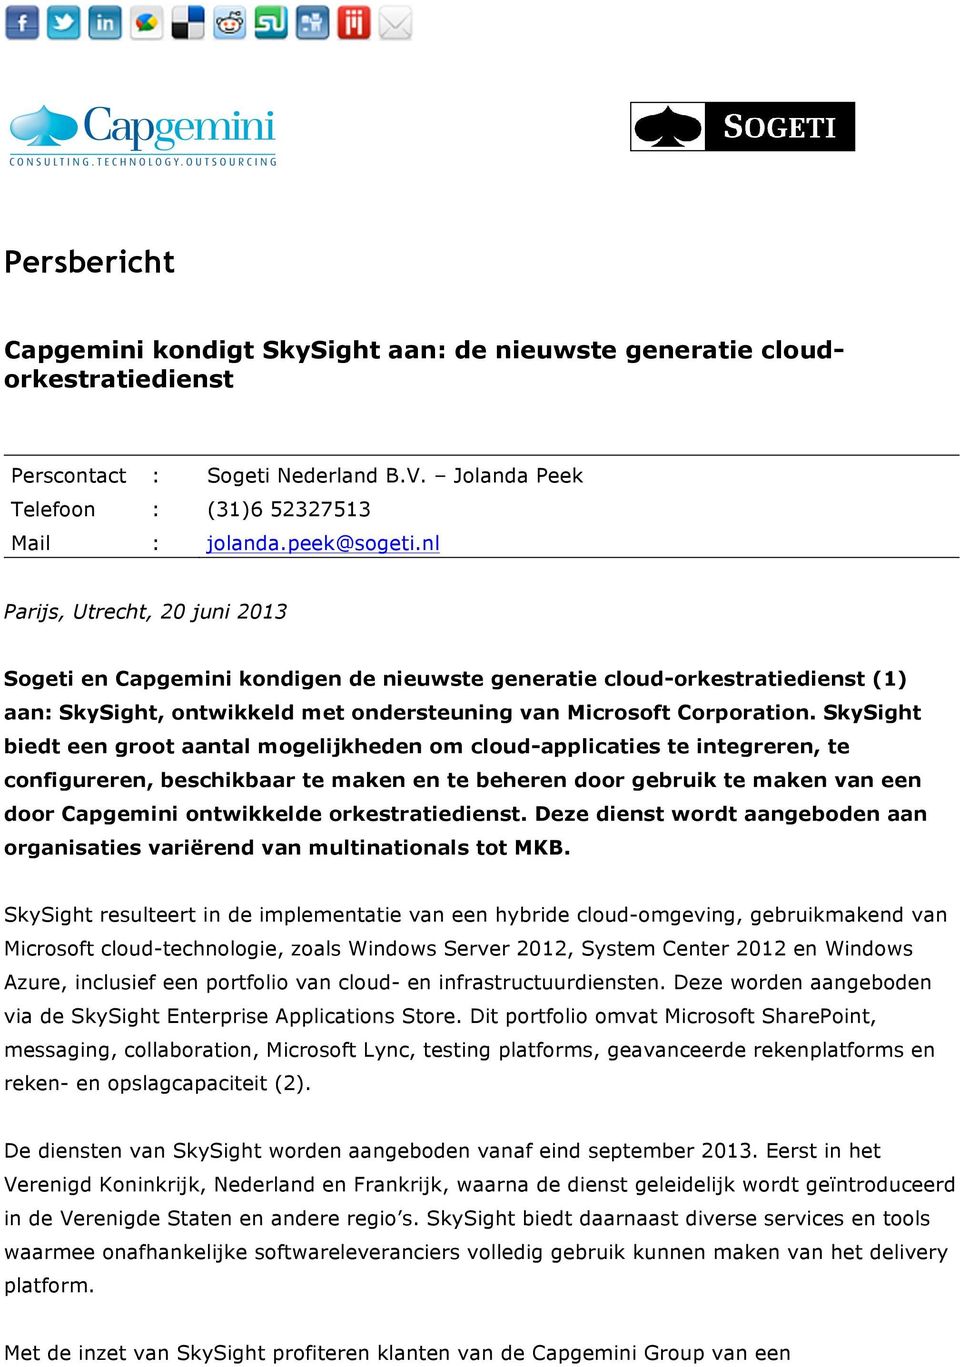 SkySight biedt een groot aantal mogelijkheden om cloud-applicaties te integreren, te configureren, beschikbaar te maken en te beheren door gebruik te maken van een door Capgemini ontwikkelde